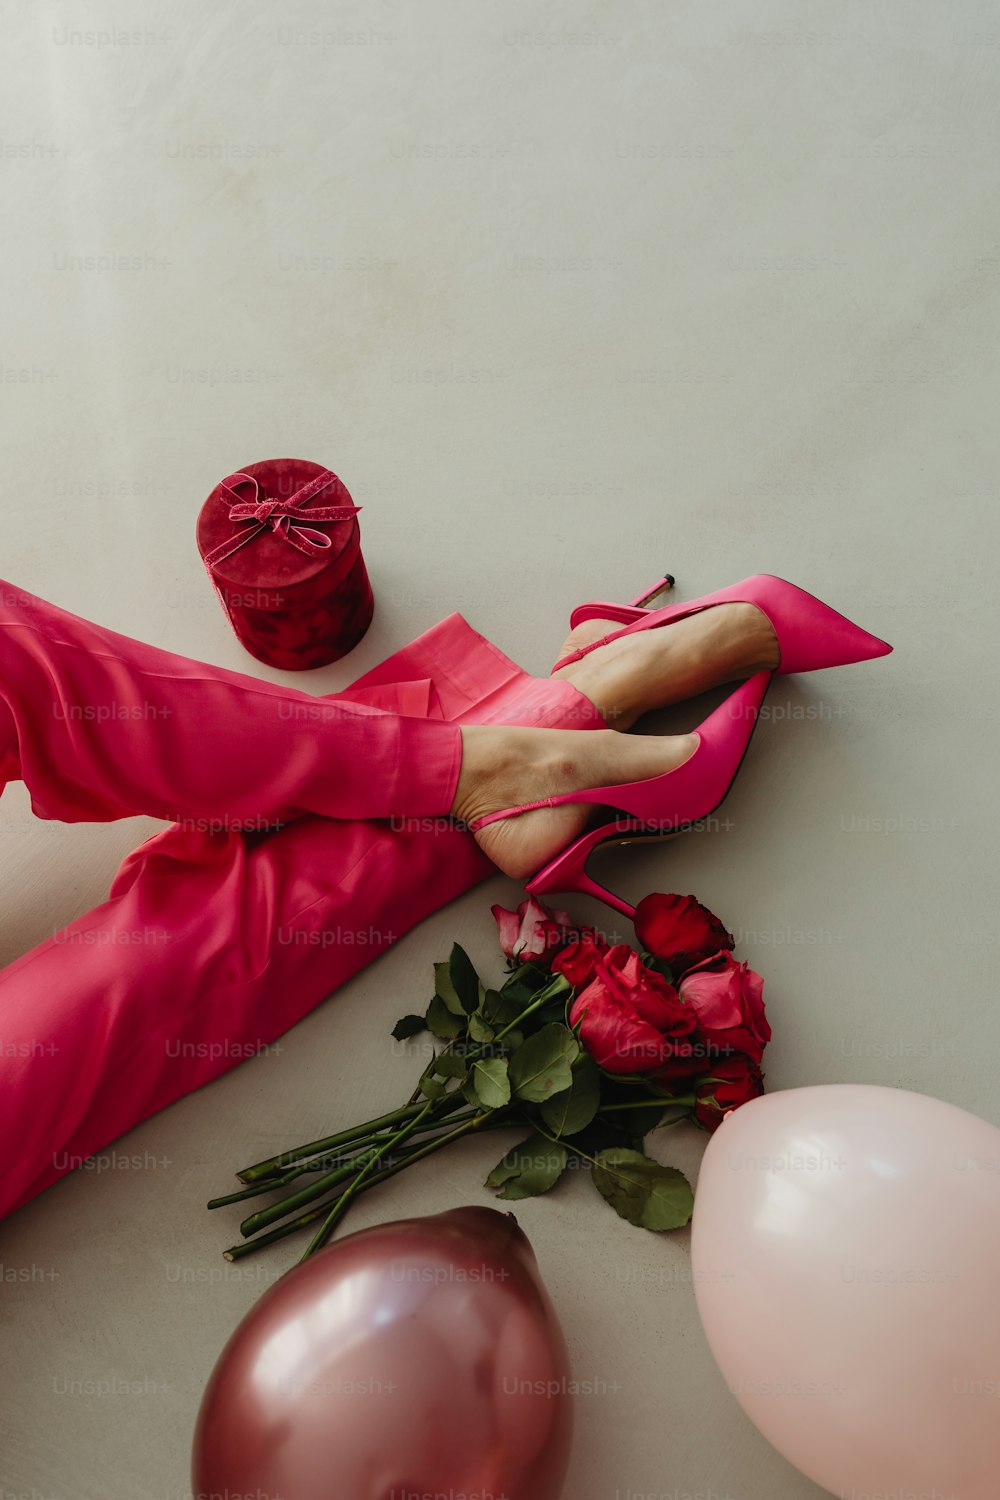 Les pieds d’une femme dans des chaussures roses à côté de ballons et de ballons